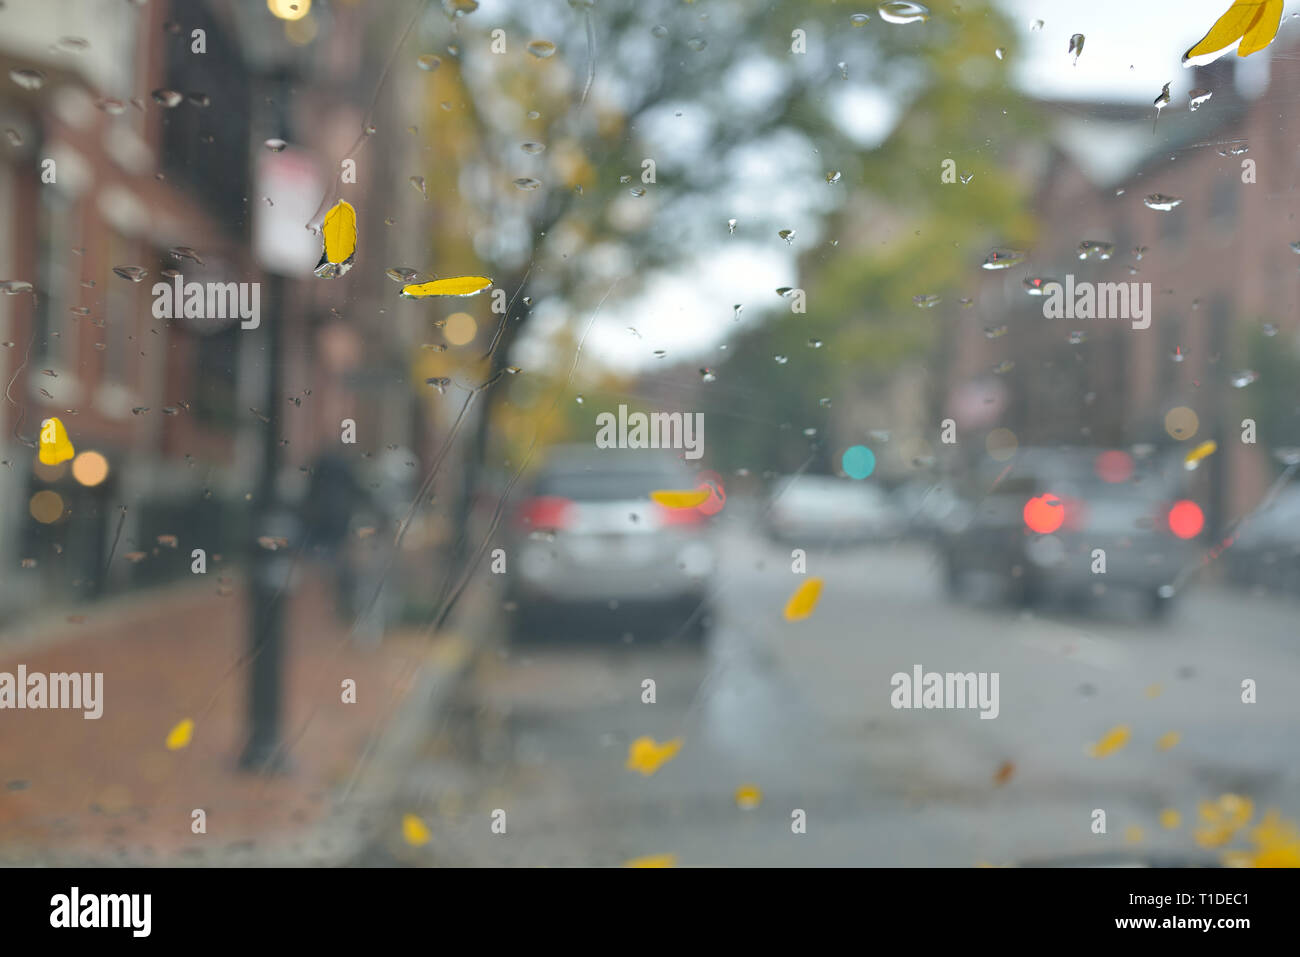 Autunno pioggia, abstract background. Parabrezza bagnato, foglie di giallo e le gocce di pioggia, Boston city street Foto Stock